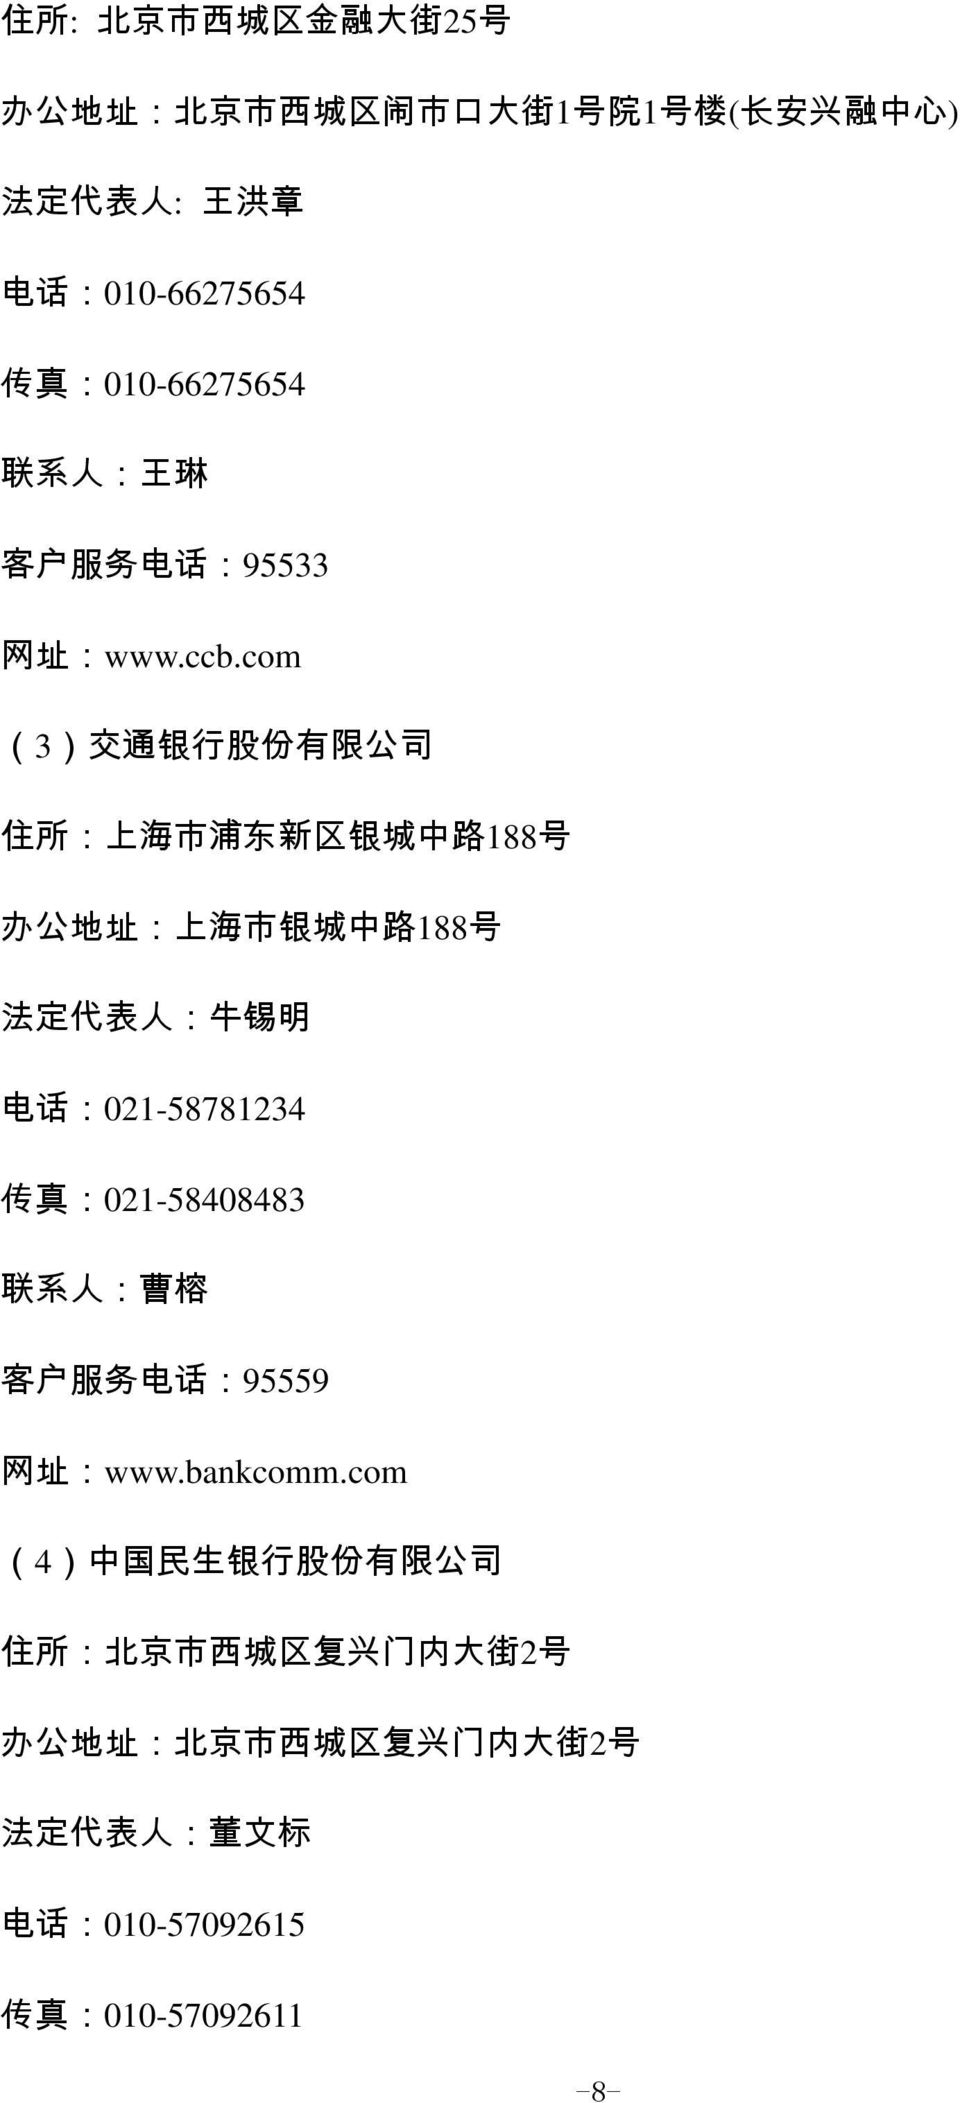 com (3) 交 通 银 行 股 份 有 限 公 司 住 所 : 上 海 市 浦 东 新 区 银 城 中 路 188 号 办 公 地 址 : 上 海 市 银 城 中 路 188 号 法 定 代 表 人 : 牛 锡 明 电 话 :021-58781234 传 真